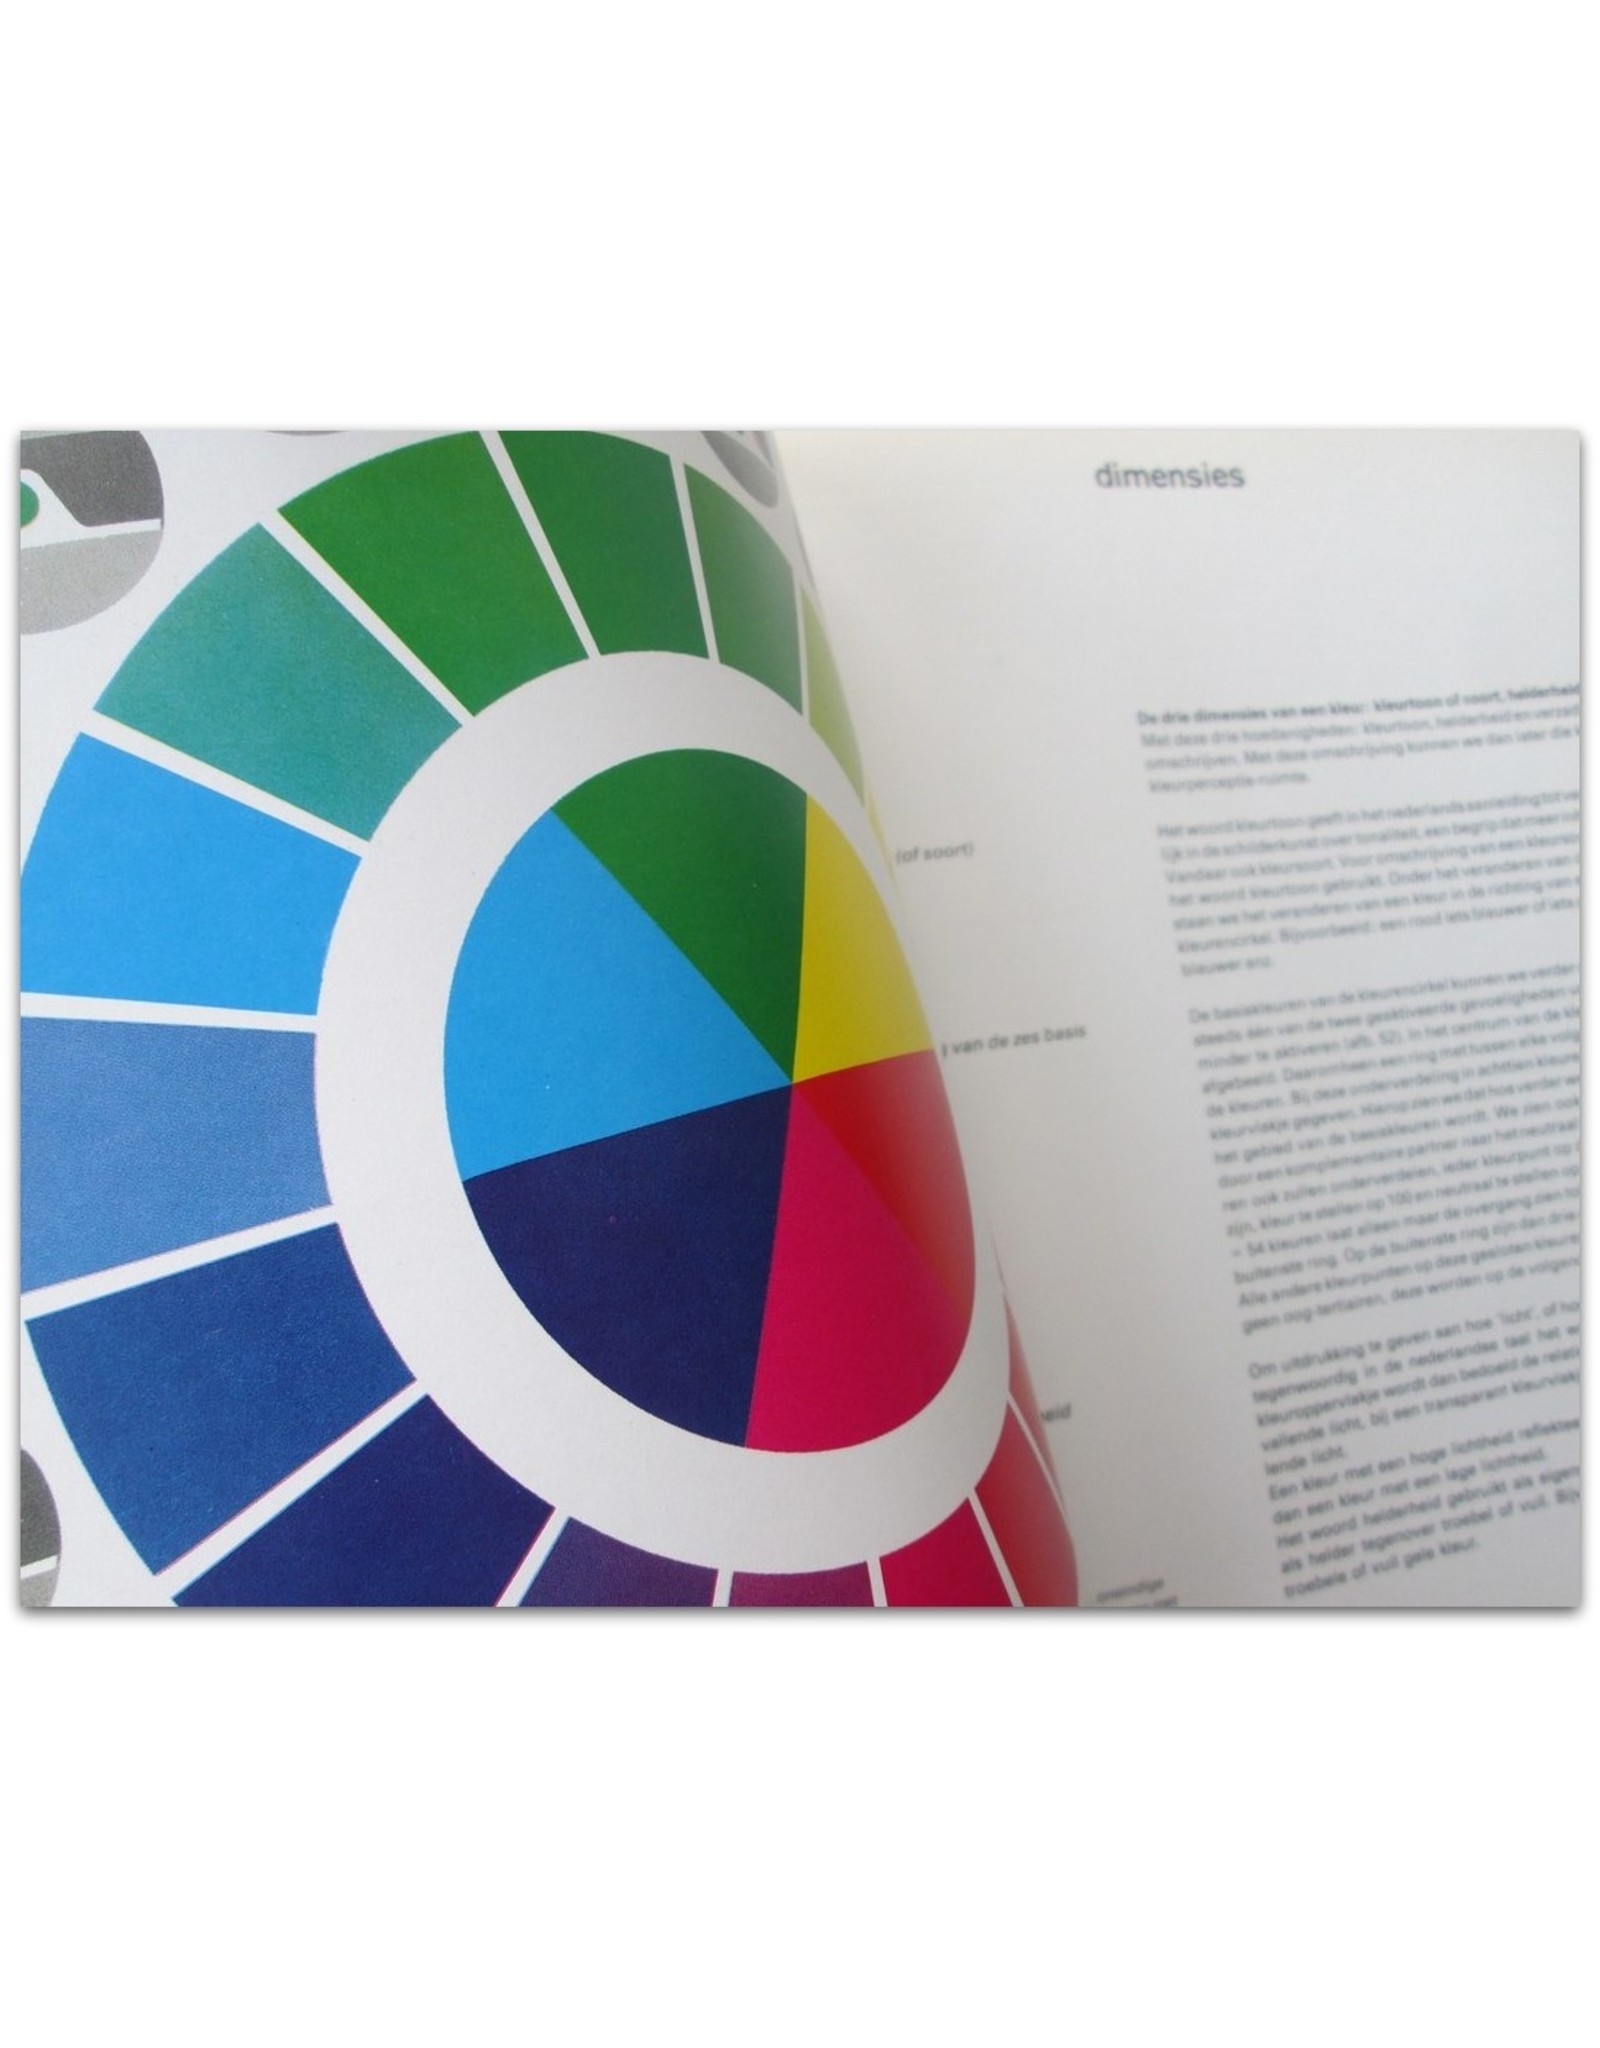 Frans Gerritsen - Het fenomeen Kleur. De nieuwe kleurenleer gebaseerd op [...] kleurperceptie